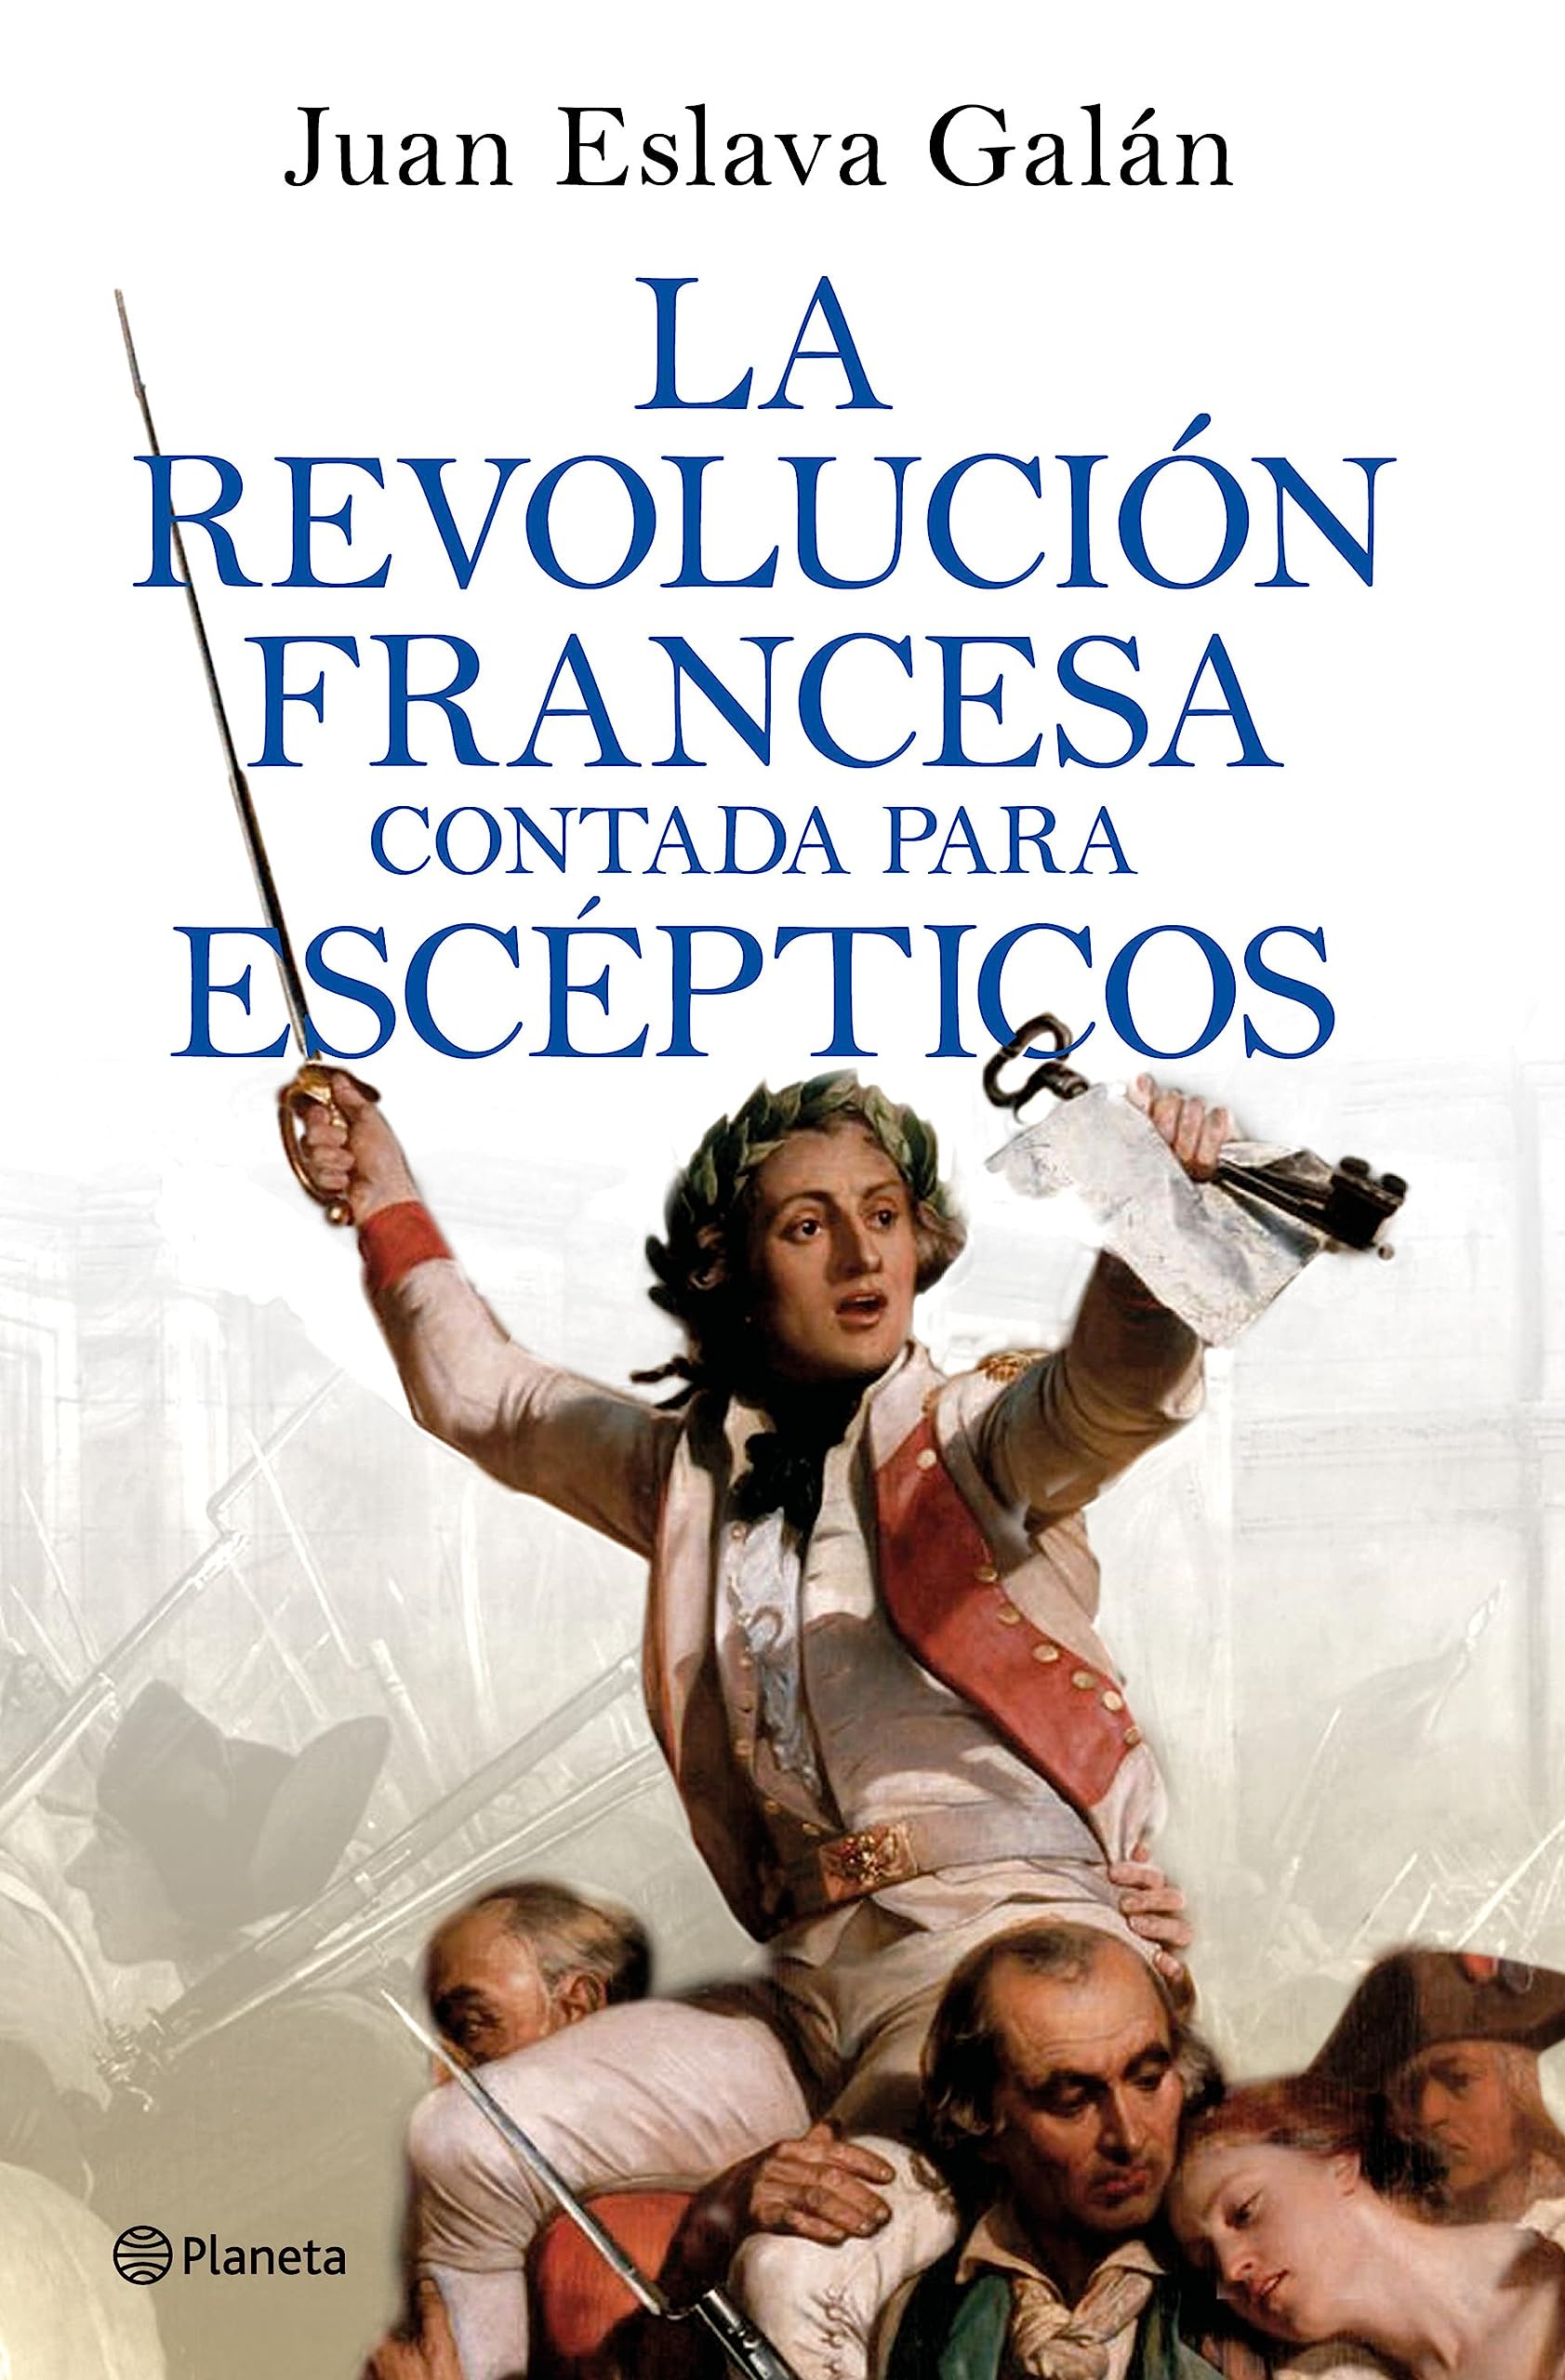 Juan Eslava Galán - La Revolucion francesa contada para escepticos